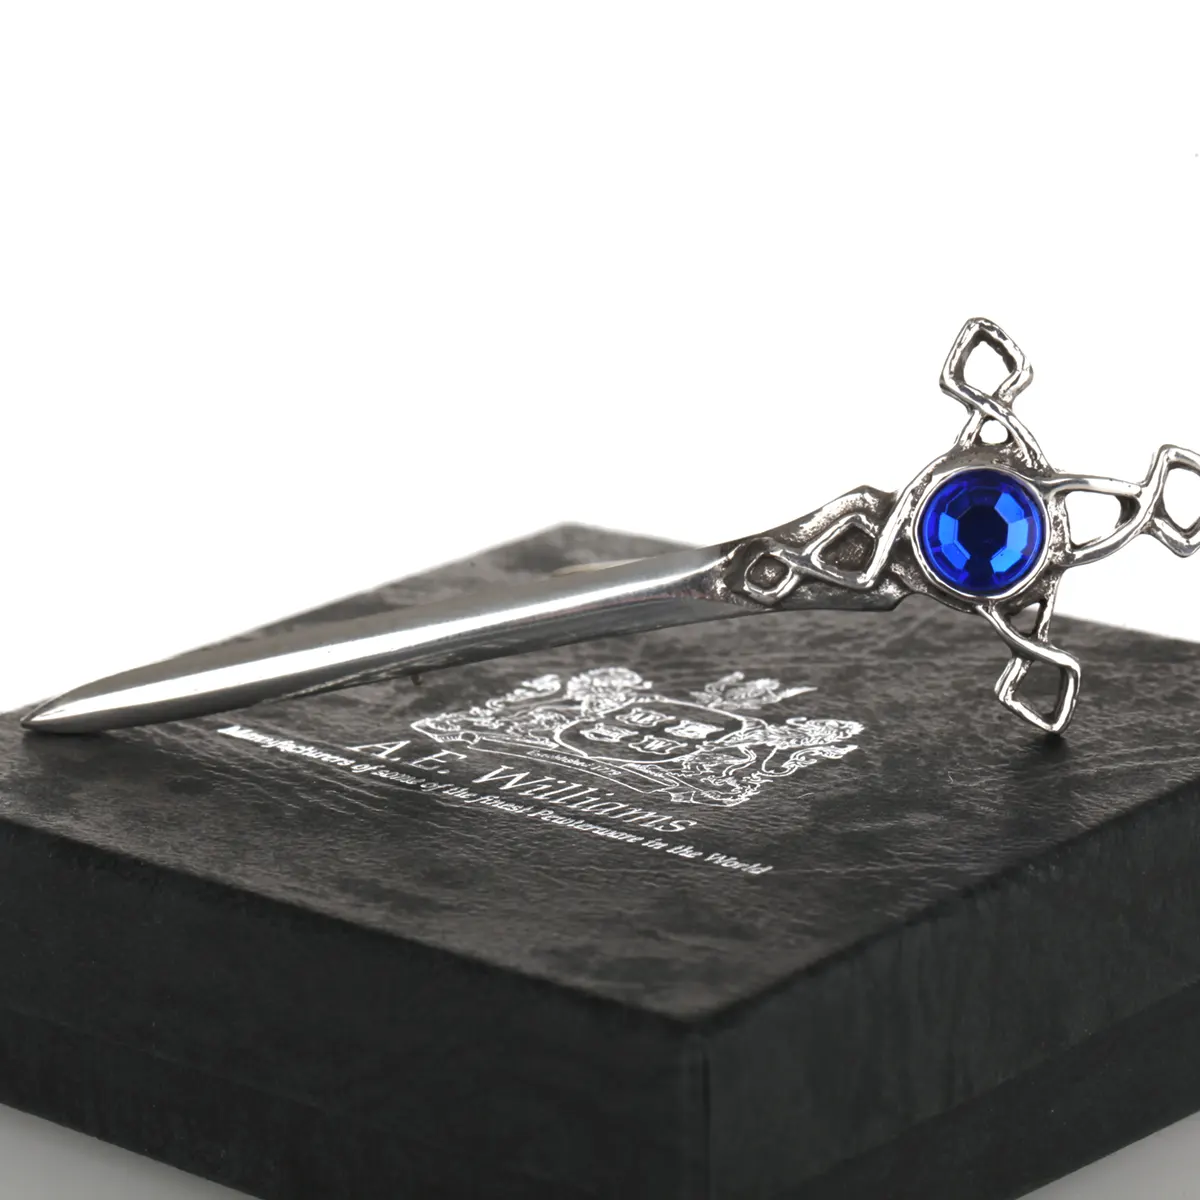 Blue Crystal Sword - Handgefertigter, schottischer Kilt Pin mit blauem Kristall